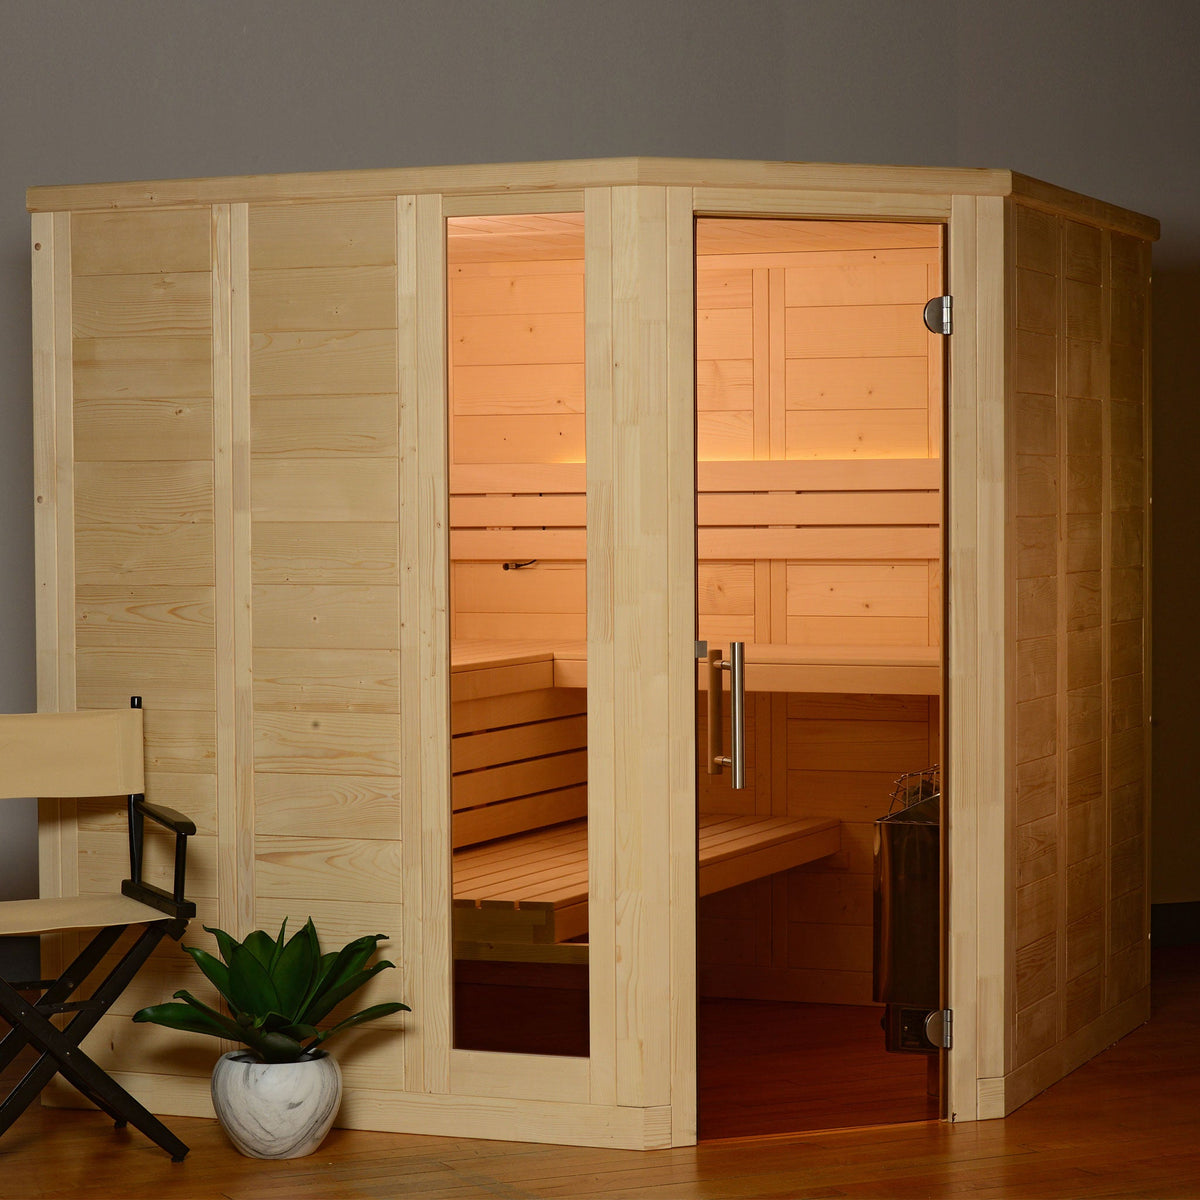 Almost Heaven Patterson 6-Person Indoor Sauna-Traditional Saunas-Nordica Sauna